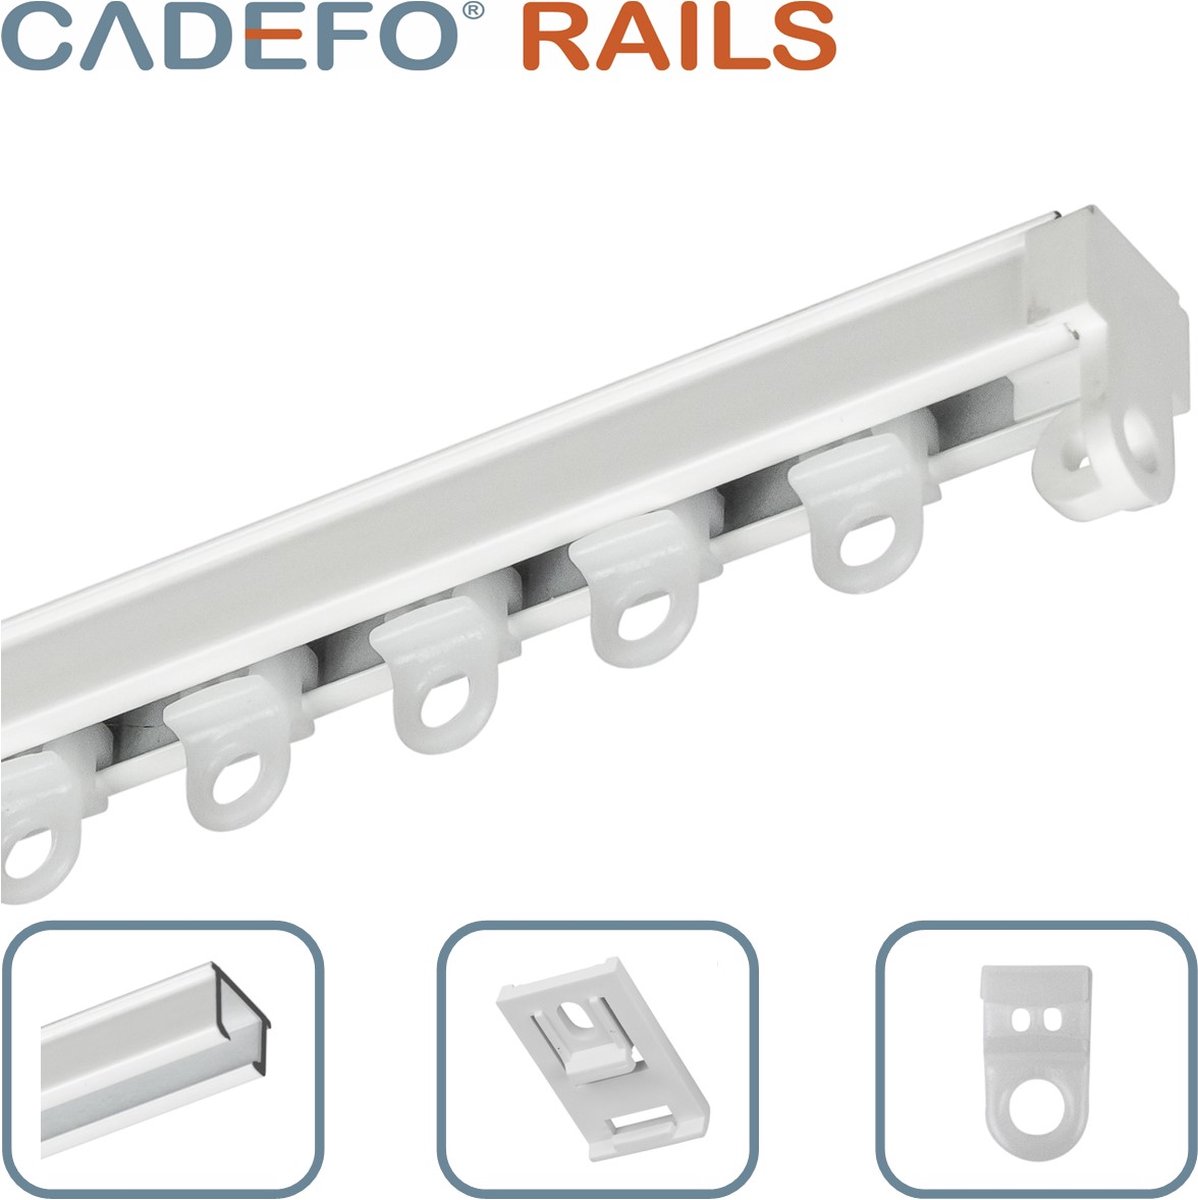 CADEFO RAILS (401 - 450 cm) Gordijnrails - Compleet op maat! - UIT 1 STUK - Leverbaar tot 6 meter - Plafondbevestiging - Lengte 435 cm